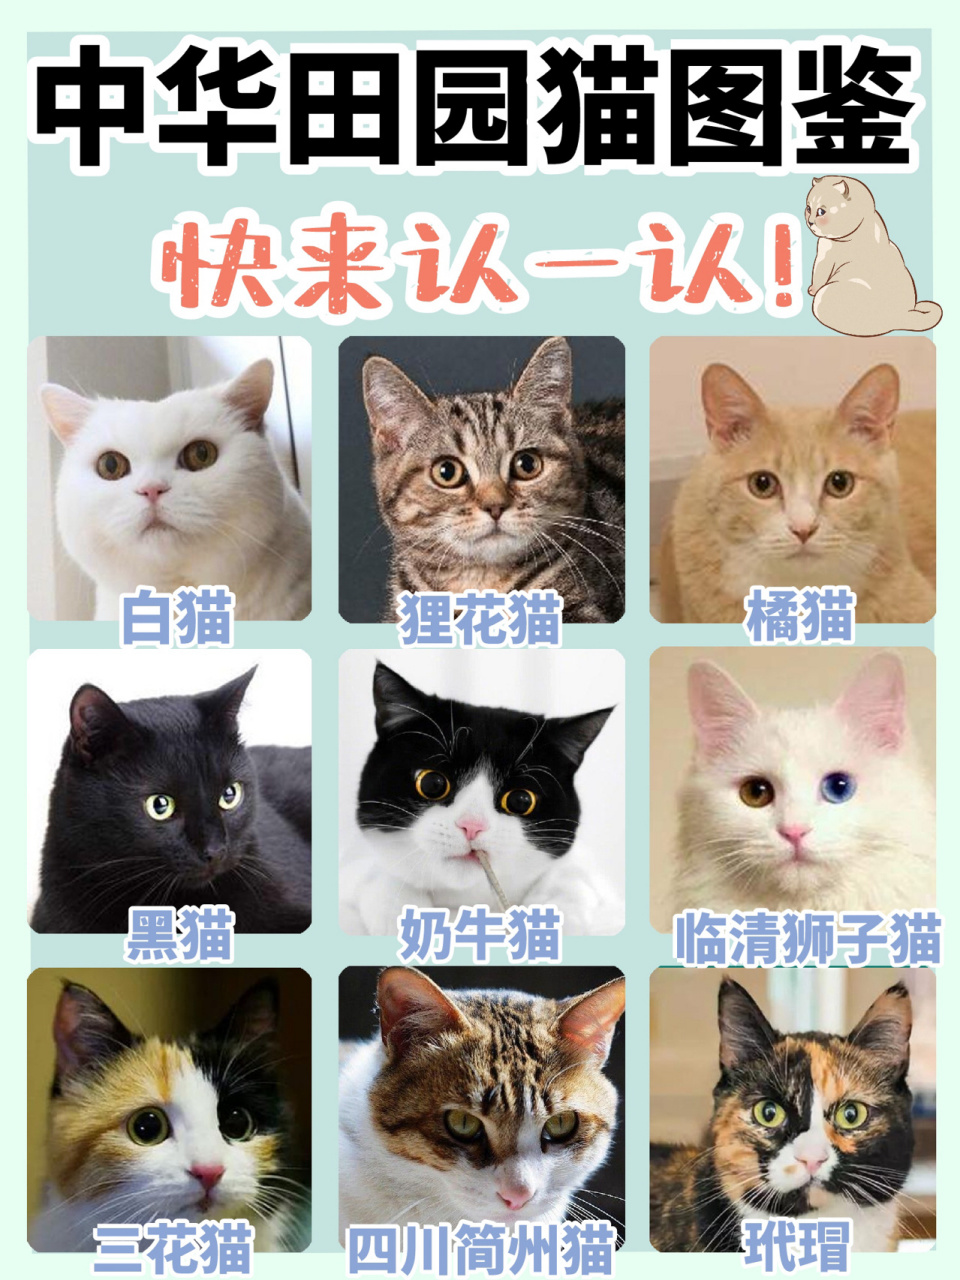 相信很多人对中华田园猫仅留在橘猫和狸花猫中,甚至有些小伙伴还以为